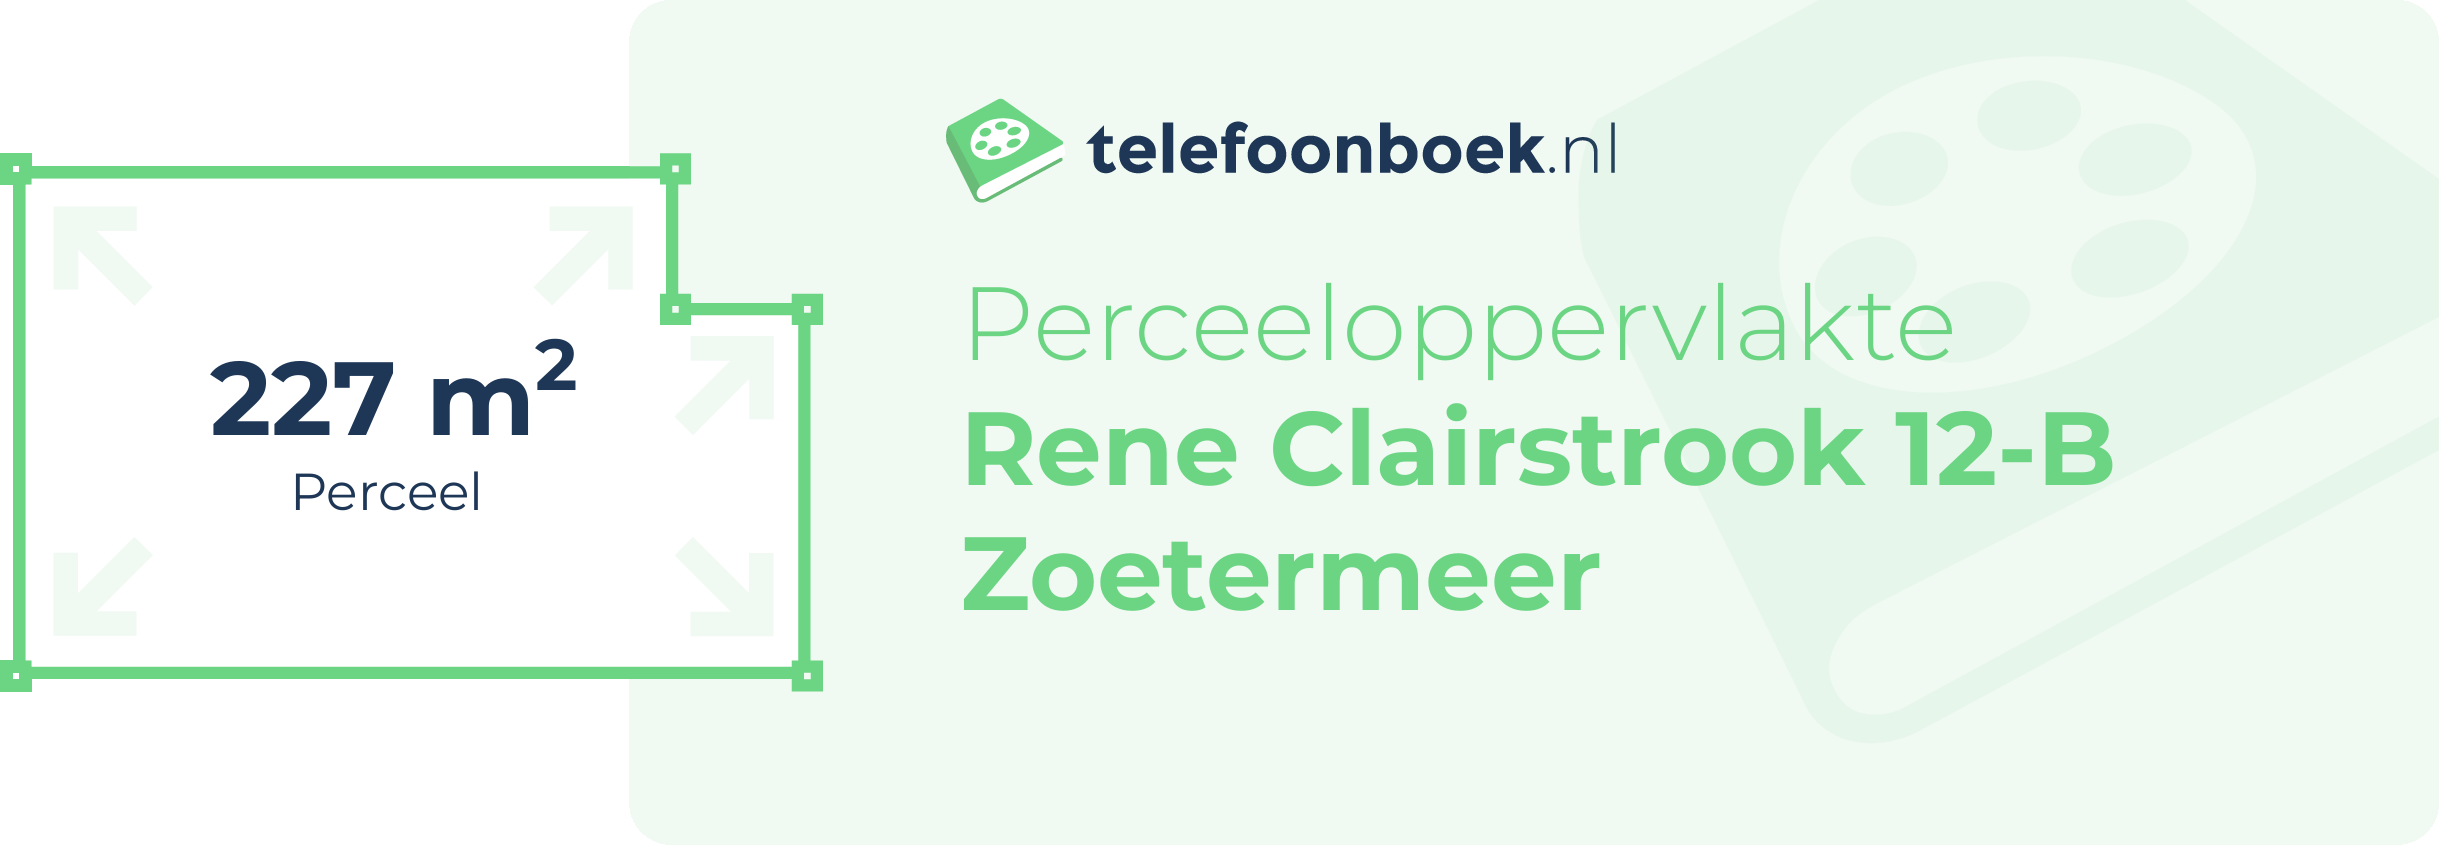 Perceeloppervlakte Rene Clairstrook 12-B Zoetermeer